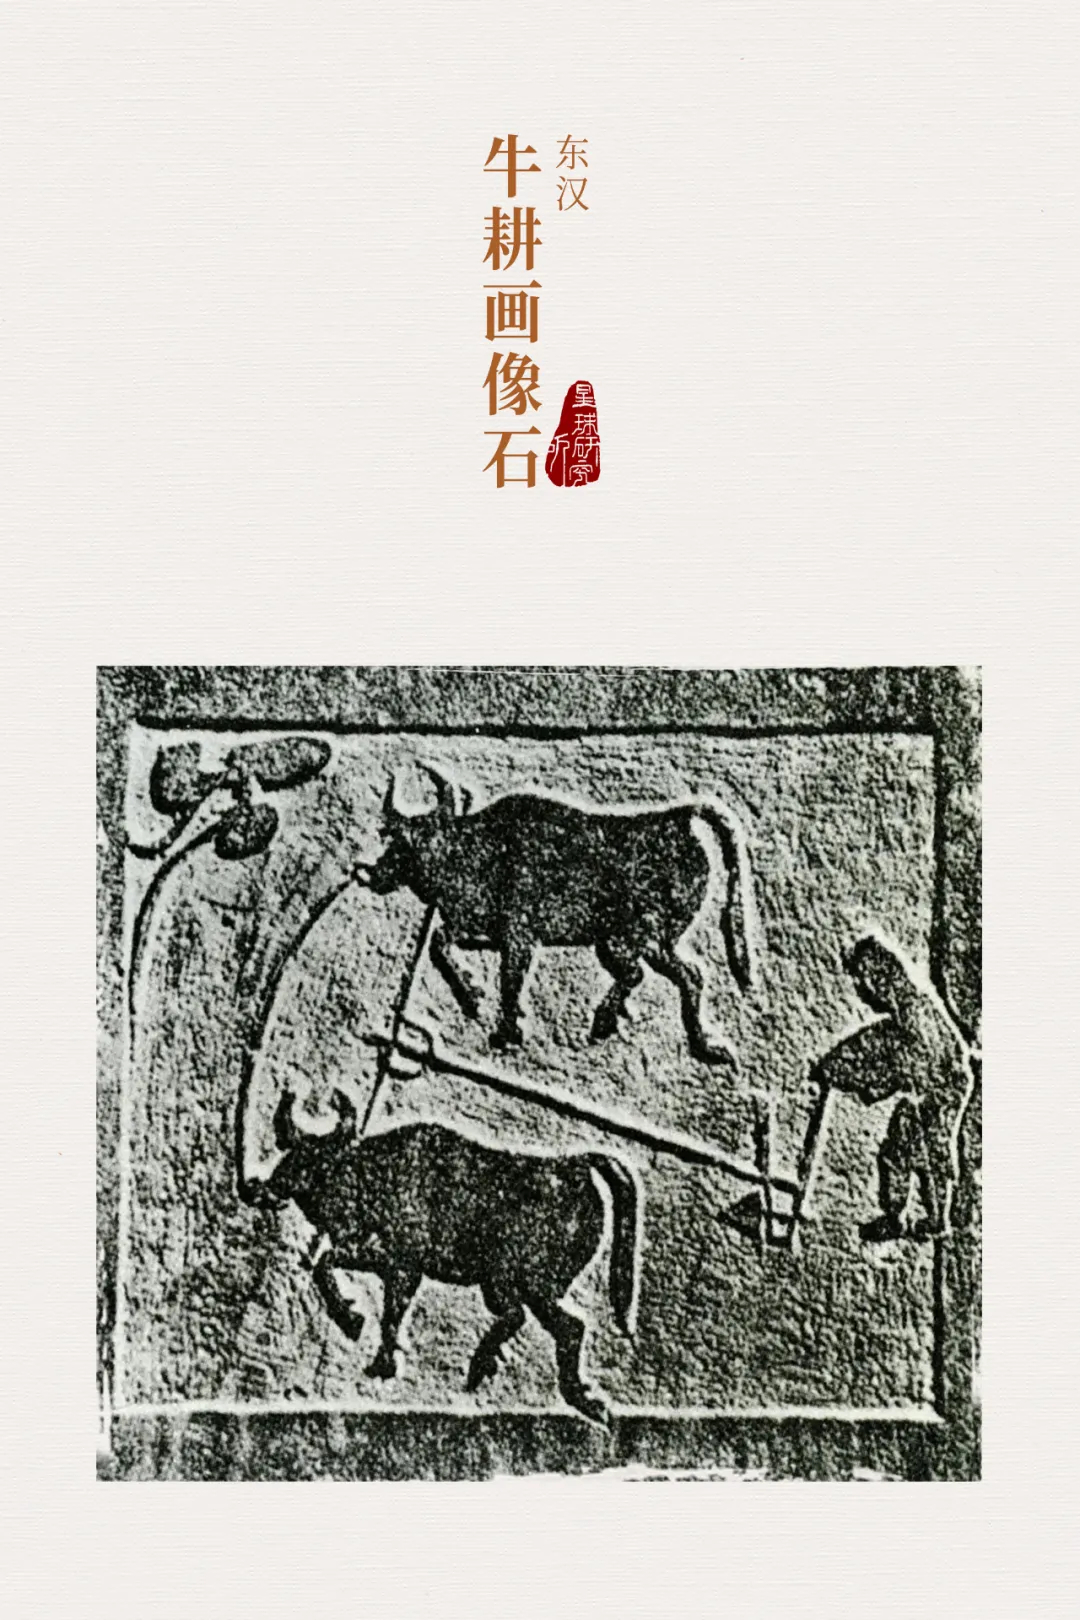 中國牛，為國為民為蒼生